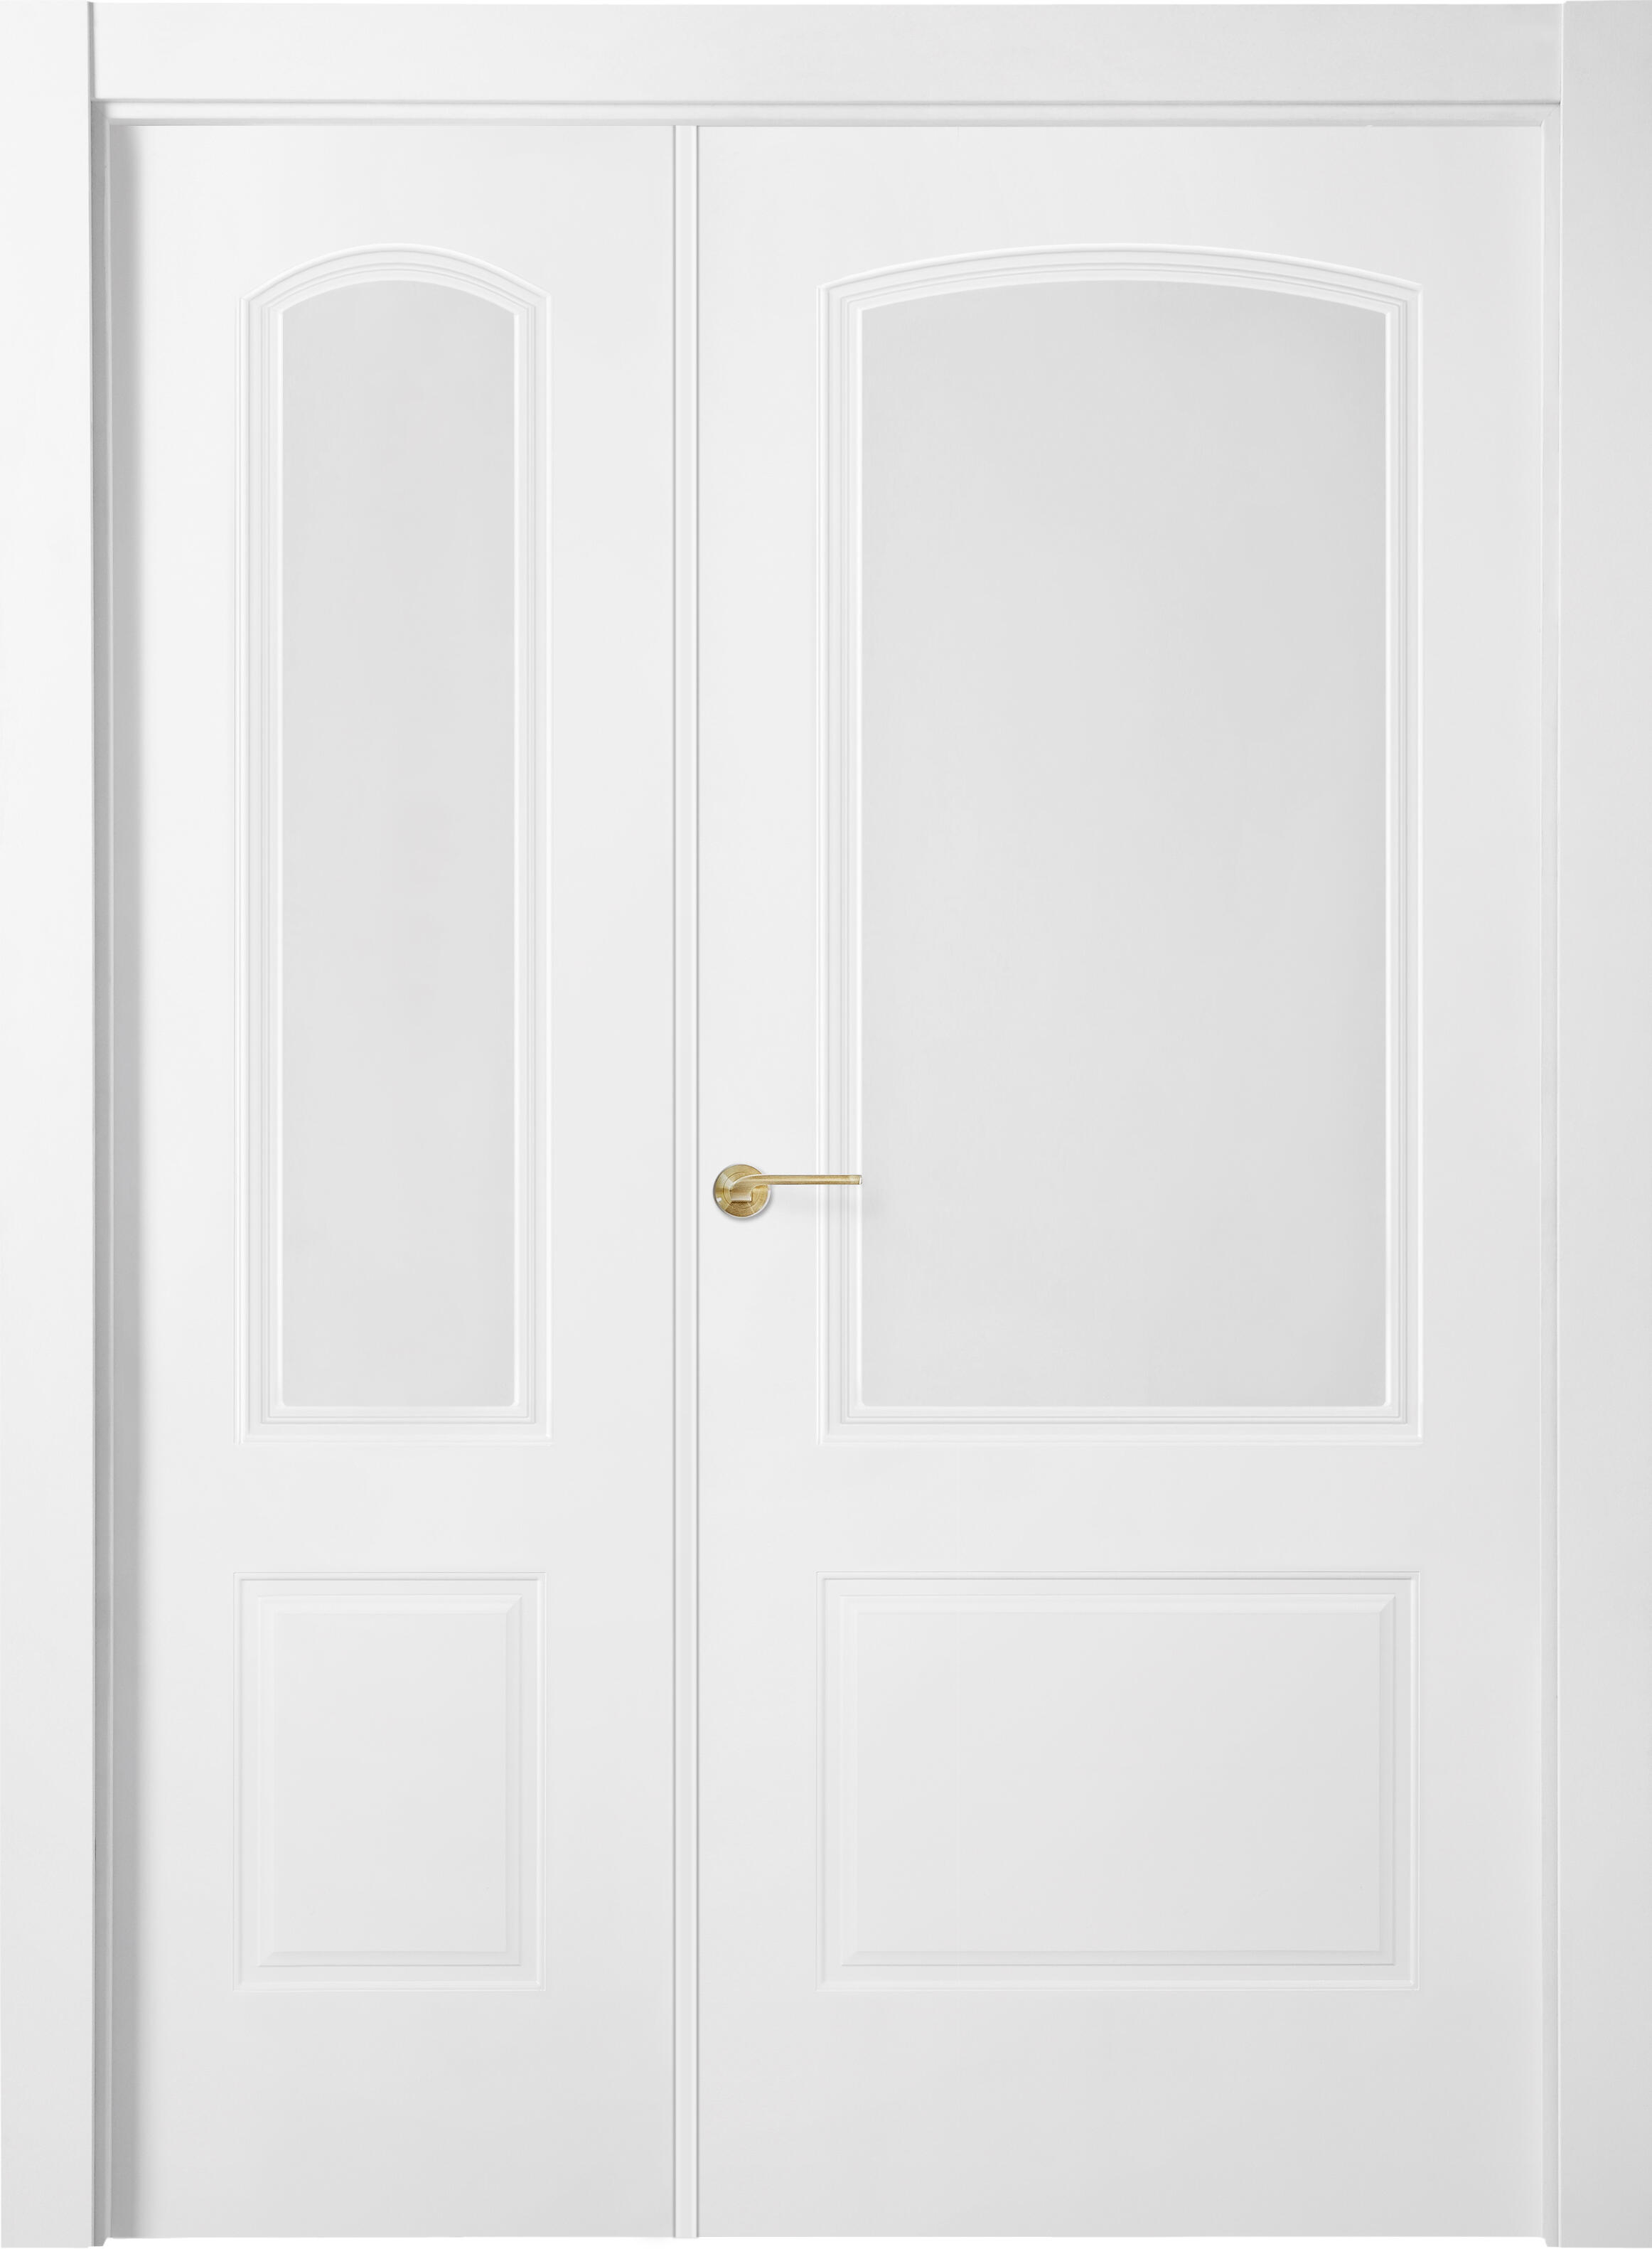 Puerta berlin plus blanco apertura derecha con cristal 9x115cm